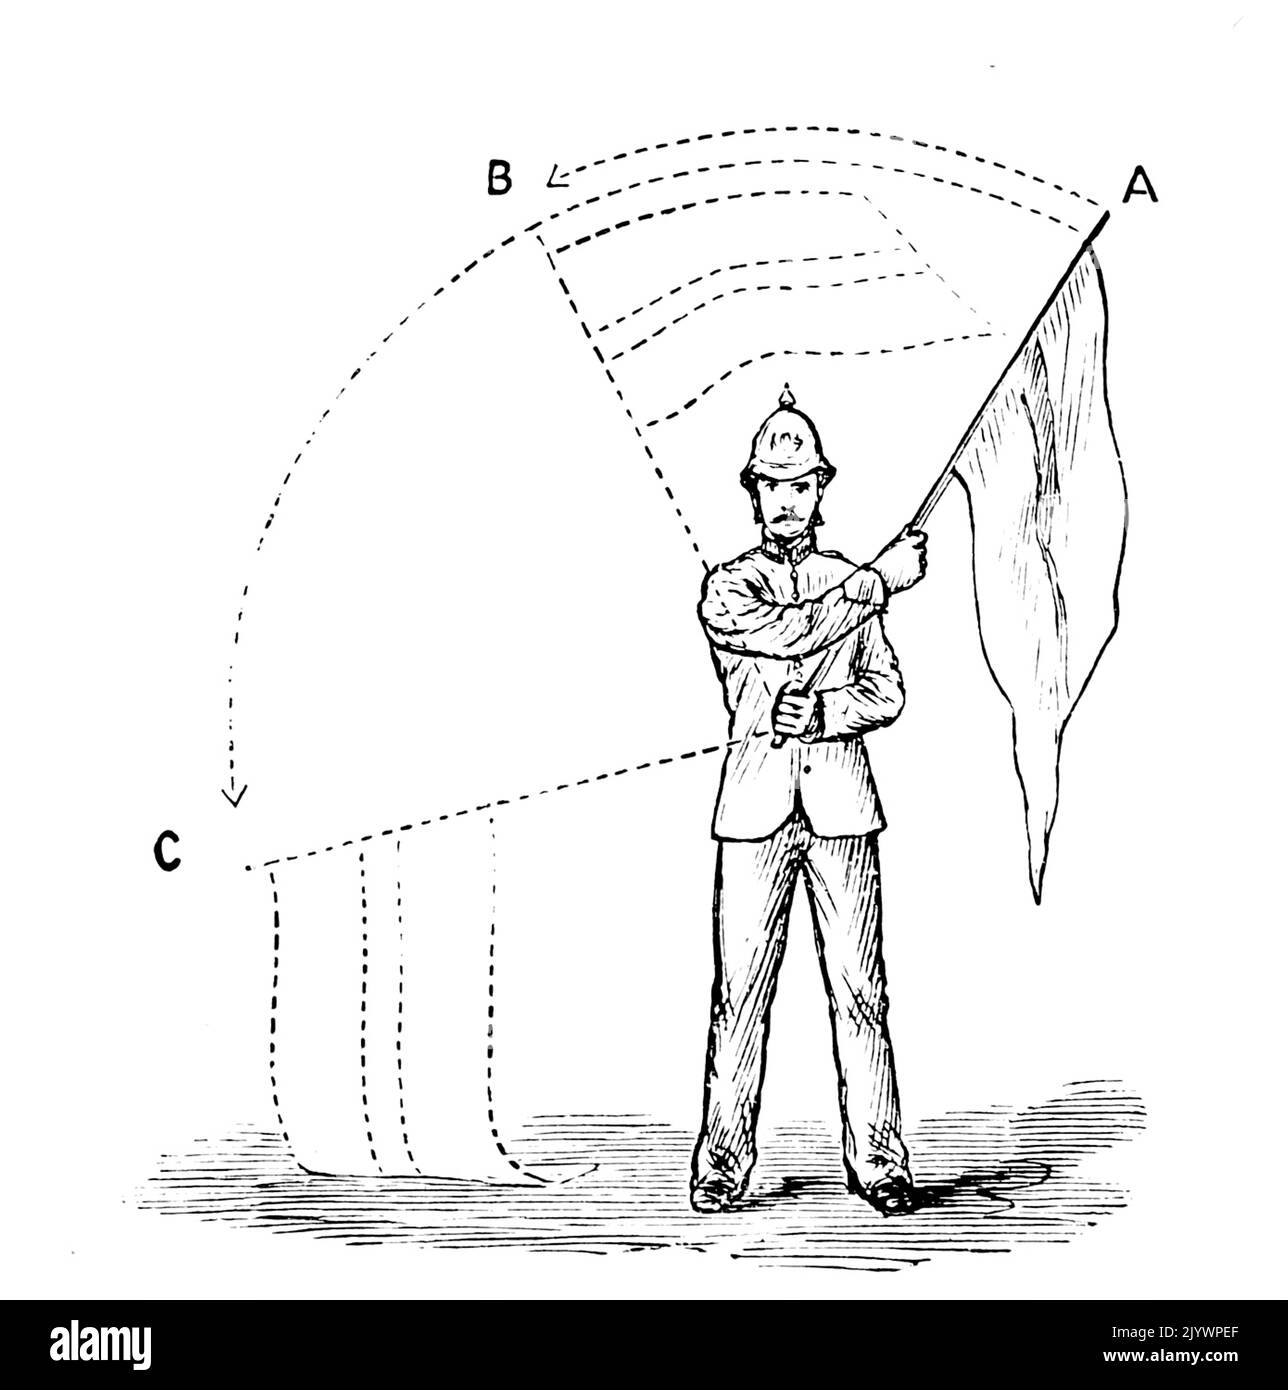 Illustration illustrant le système de signalisation par sémaphore de drapeau le système de télégraphie, qui transmet des informations à distance au moyen de signaux visuels avec des drapeaux à main. Daté du 19th siècle Banque D'Images